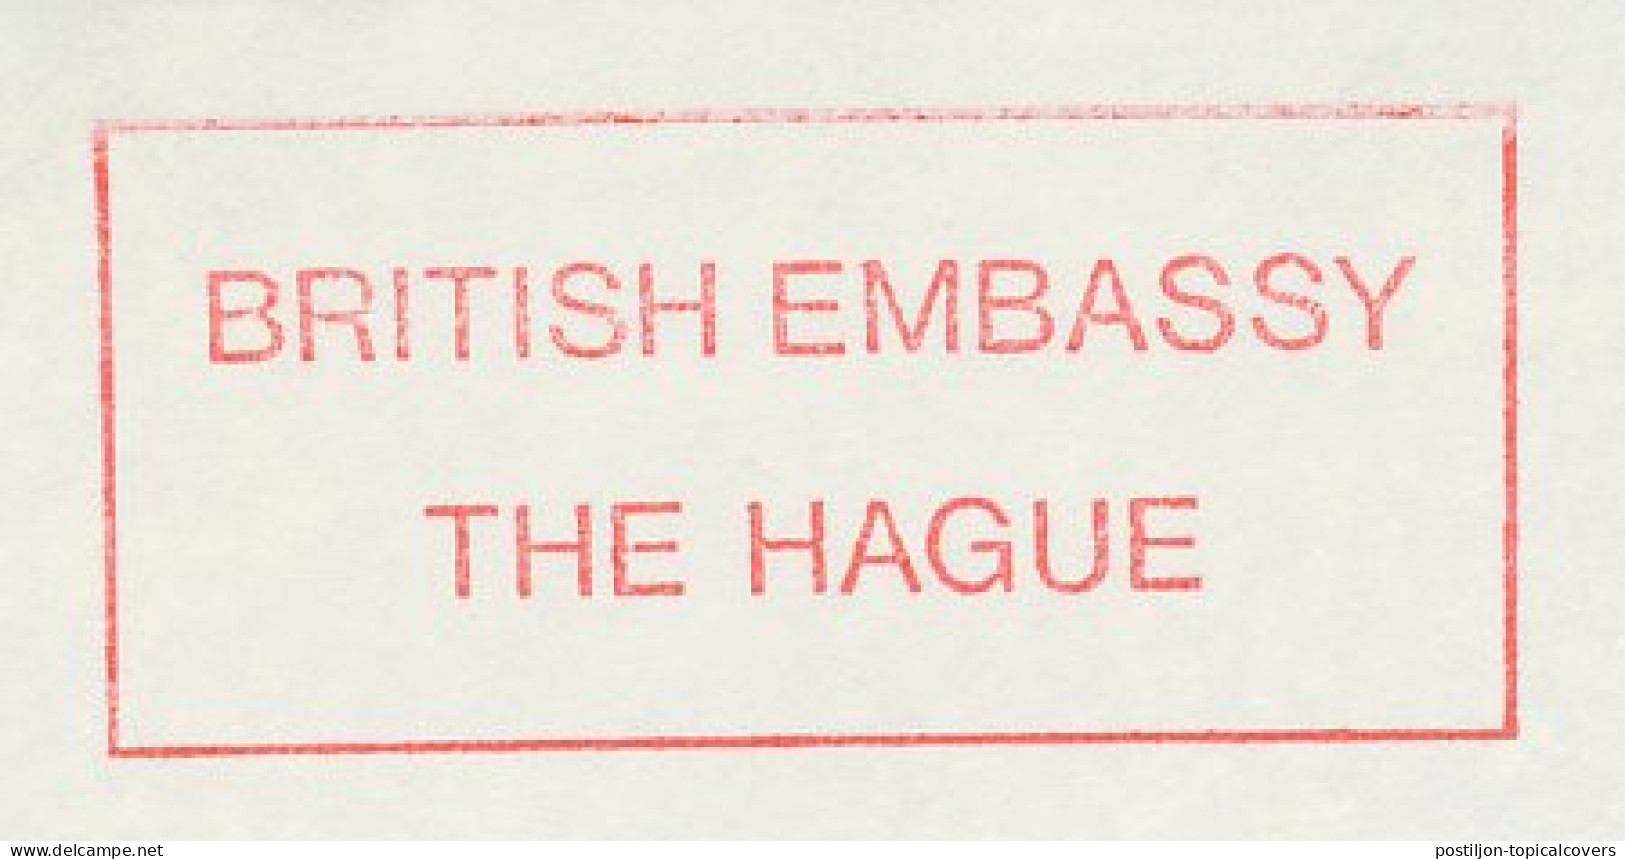 Meter Cut Netherlands 1984 British Embassy - Ohne Zuordnung